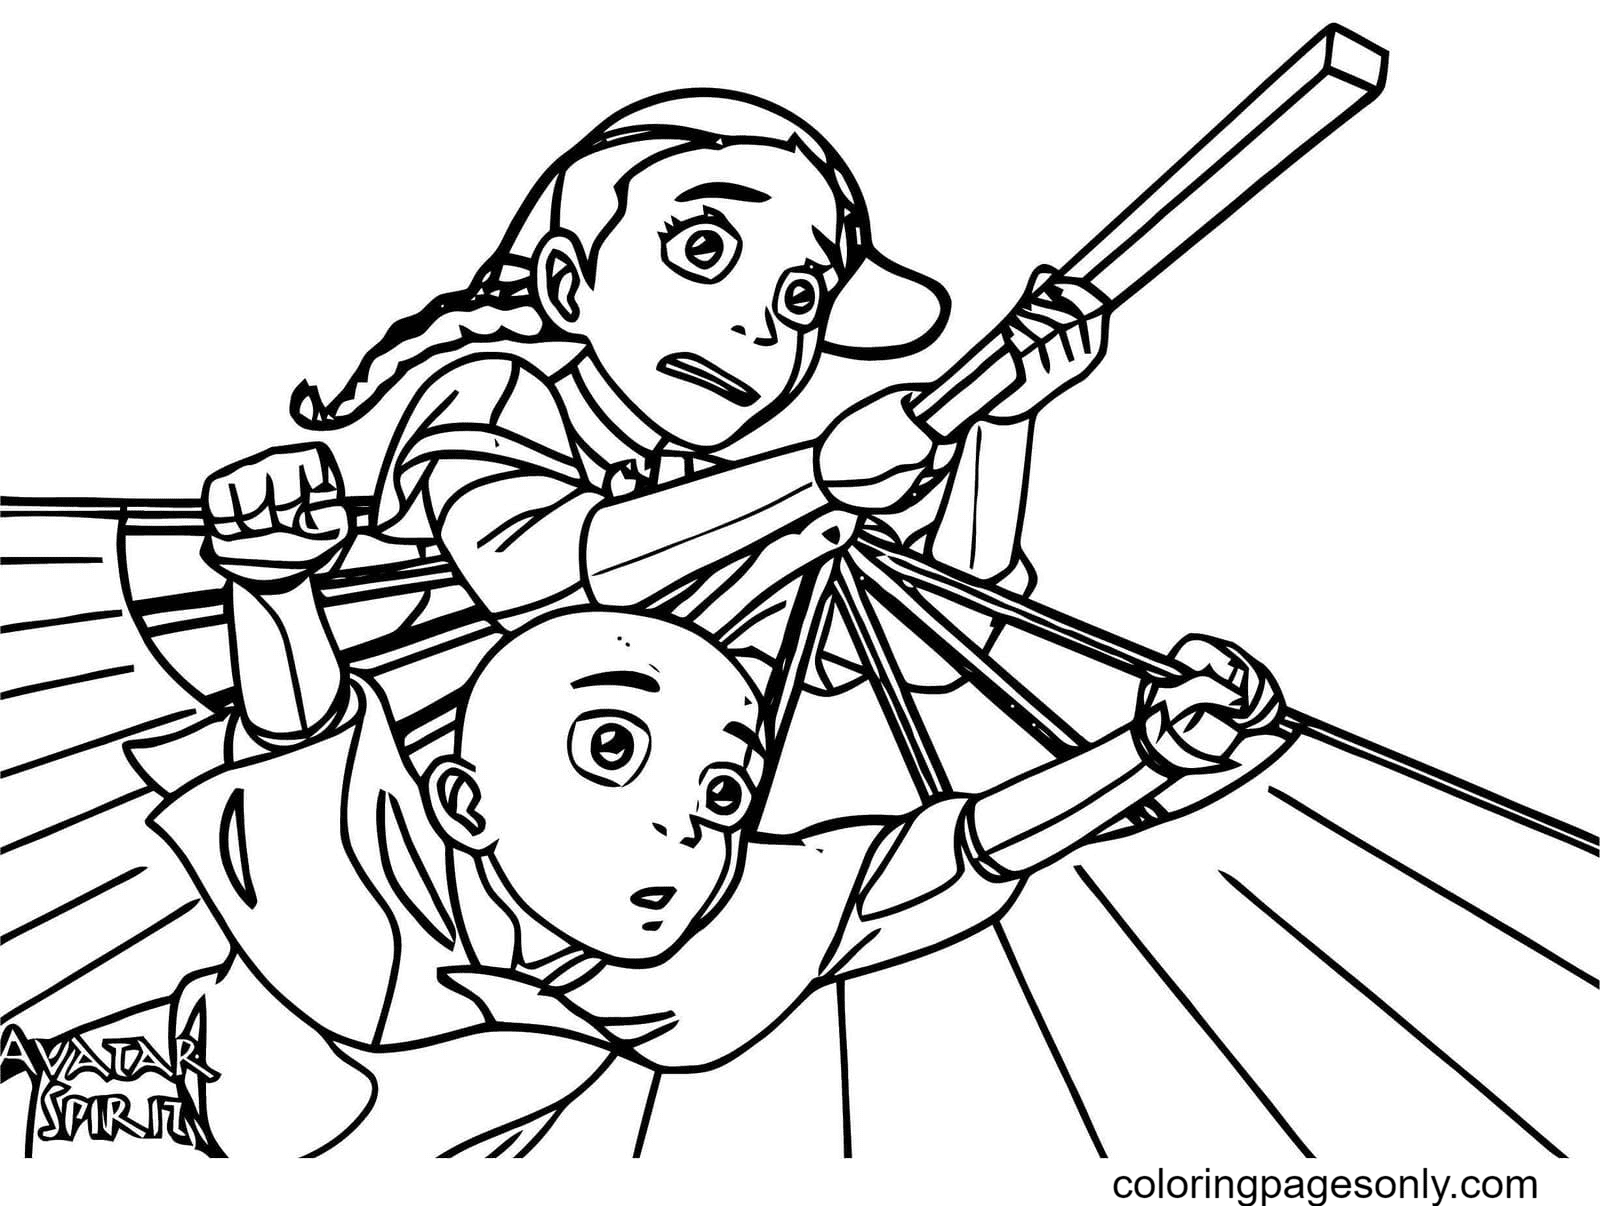 Aang and Katara in flight Coloring Page